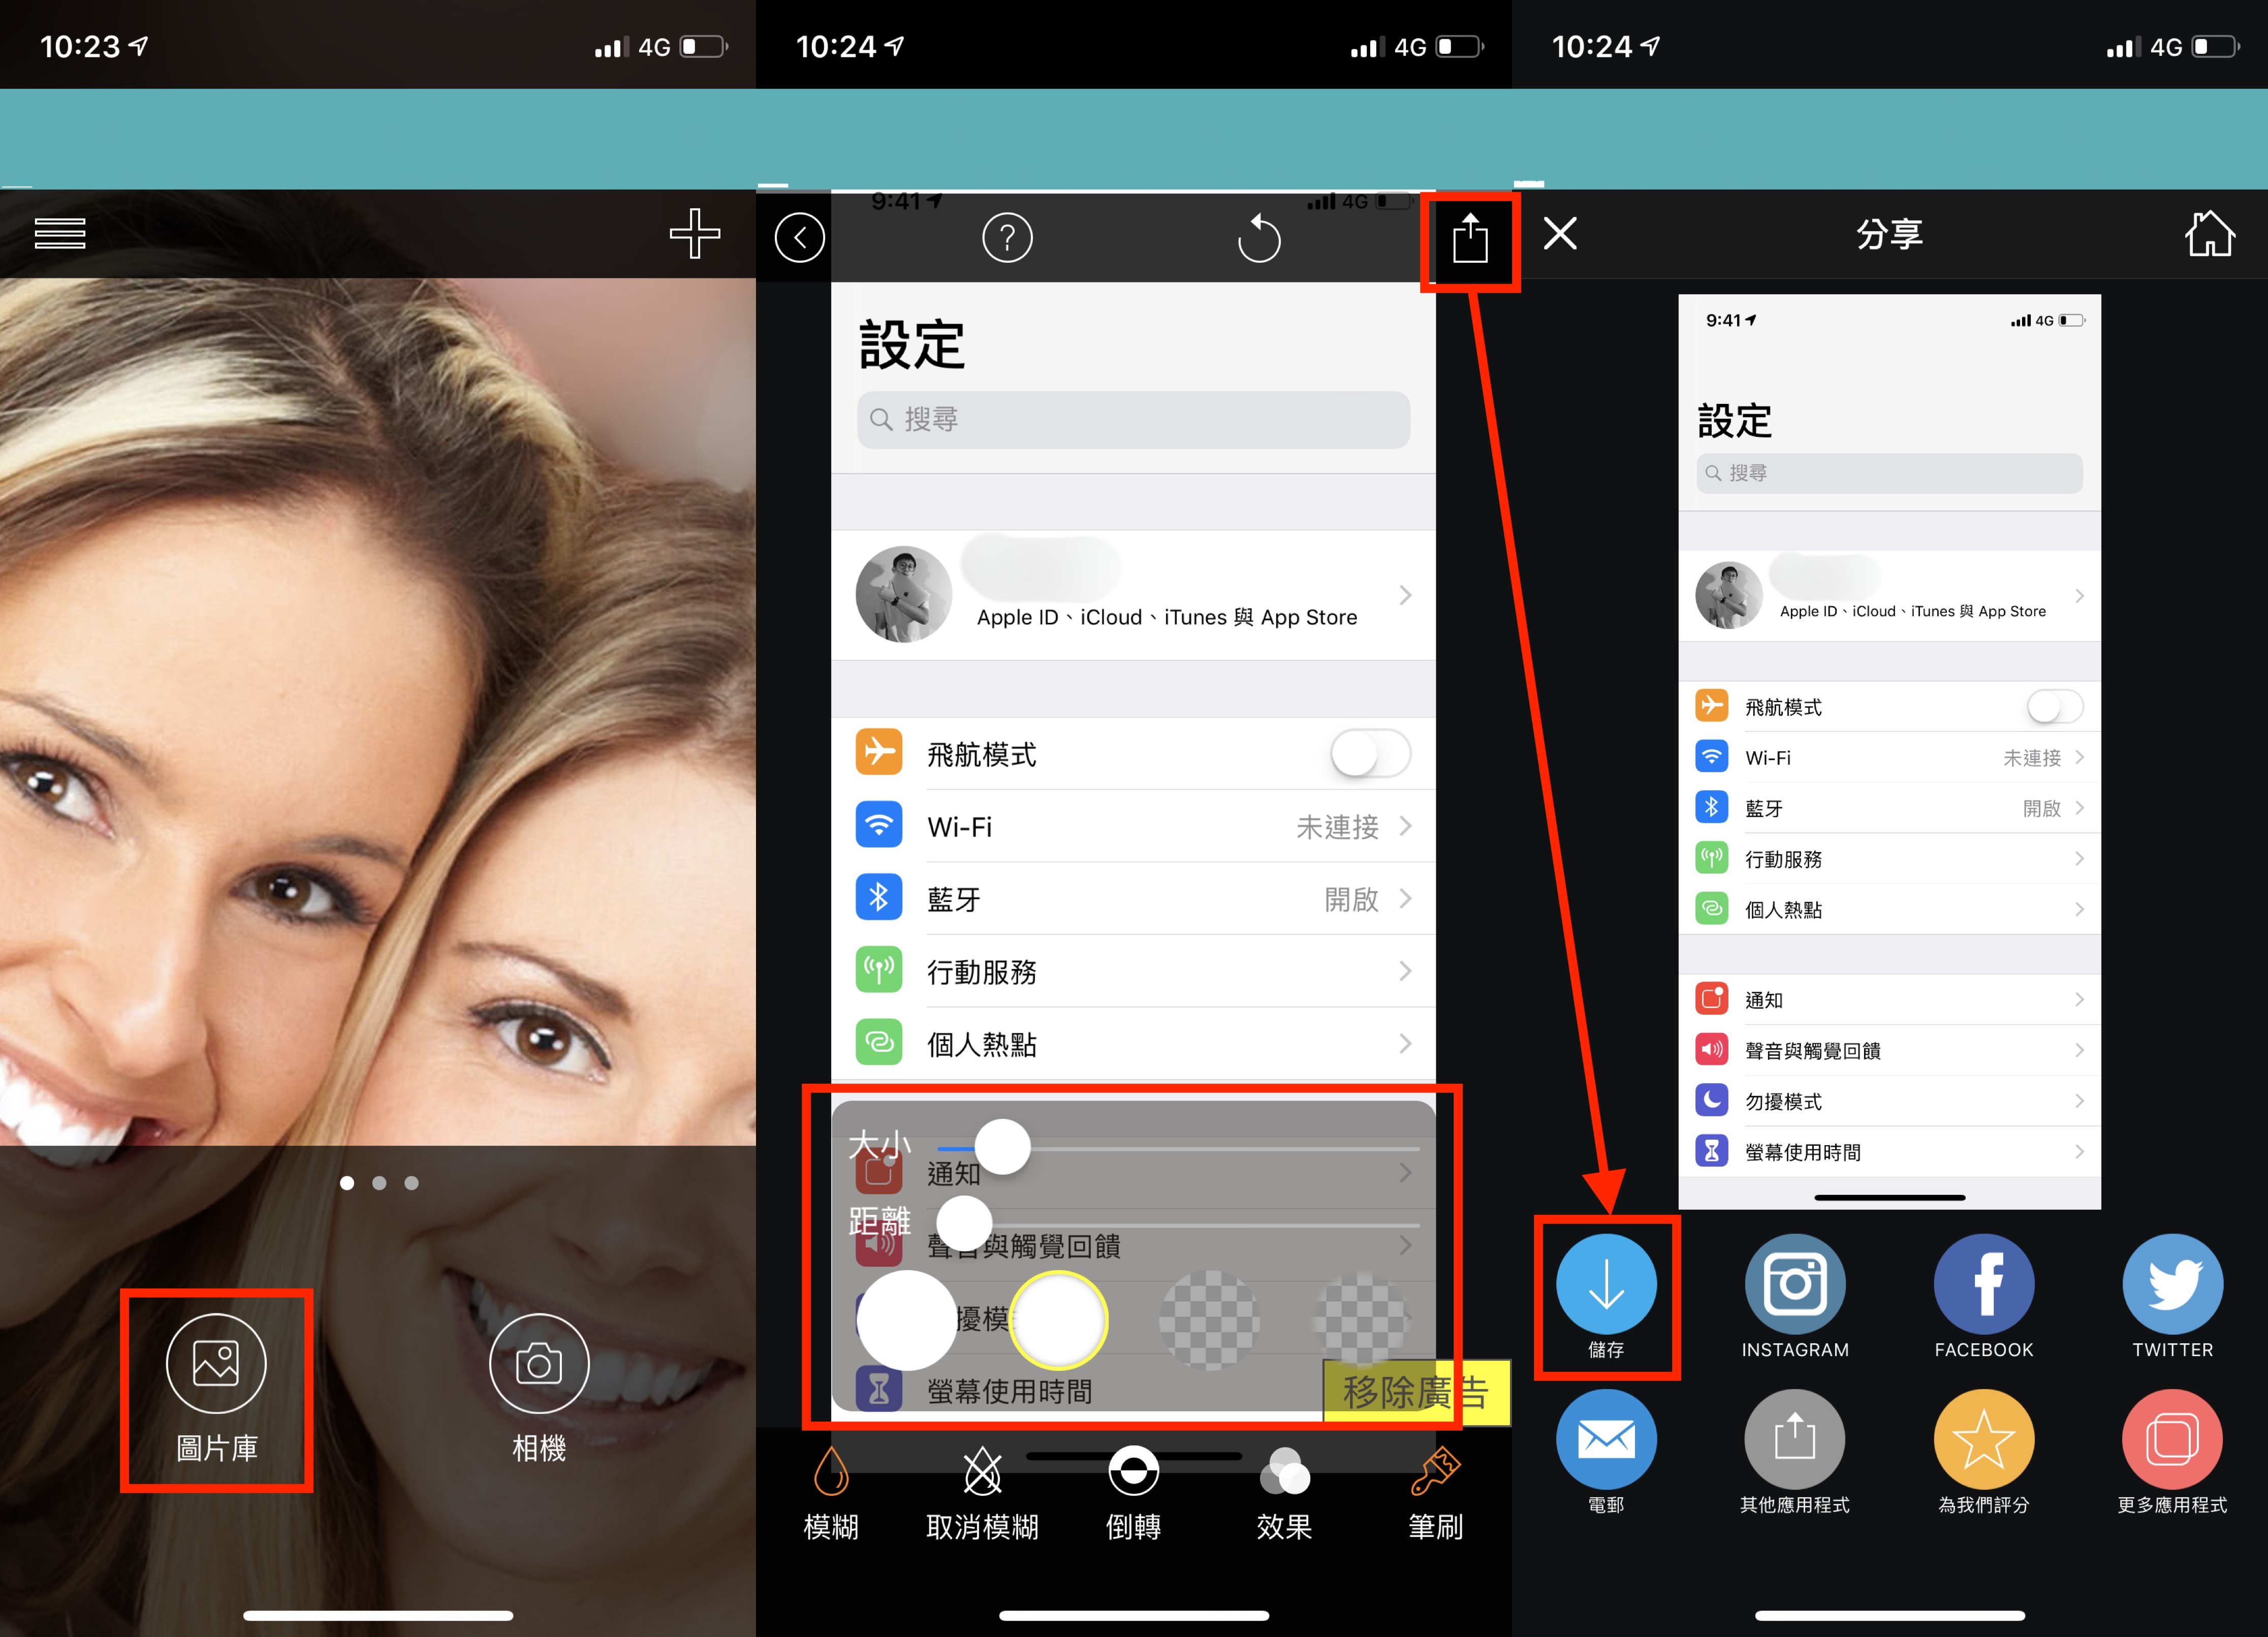 五款Ios 馬賽克App 推薦模糊效果遮蔽隱私- 蘋果仁- 果仁Iphone/Ios/好物推薦科技媒體